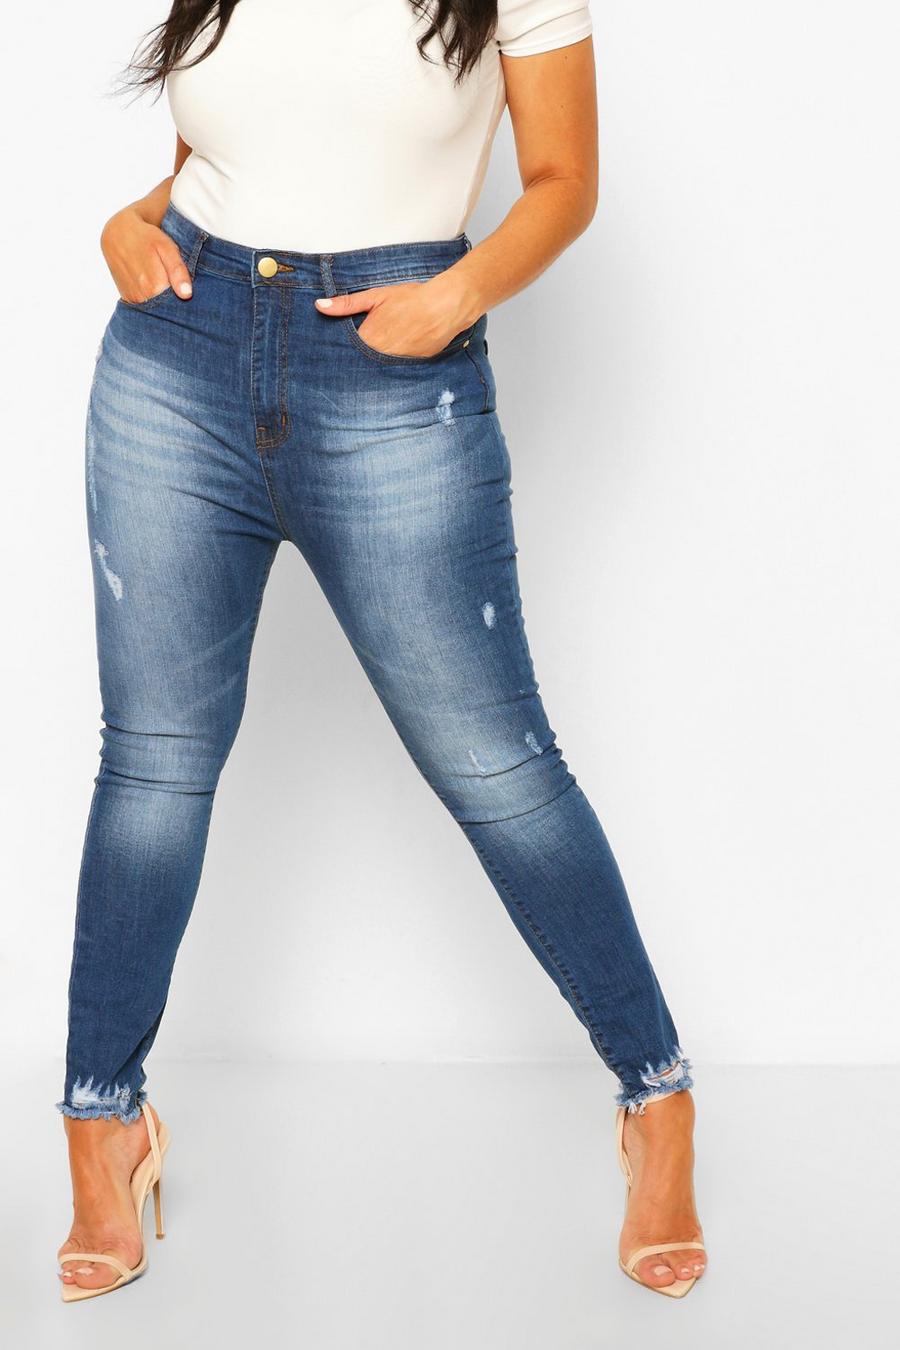 כחול ביניים azul סקיני ג'ינס עם קרעים גדולים ומכפלת פרומה מידות גדולות